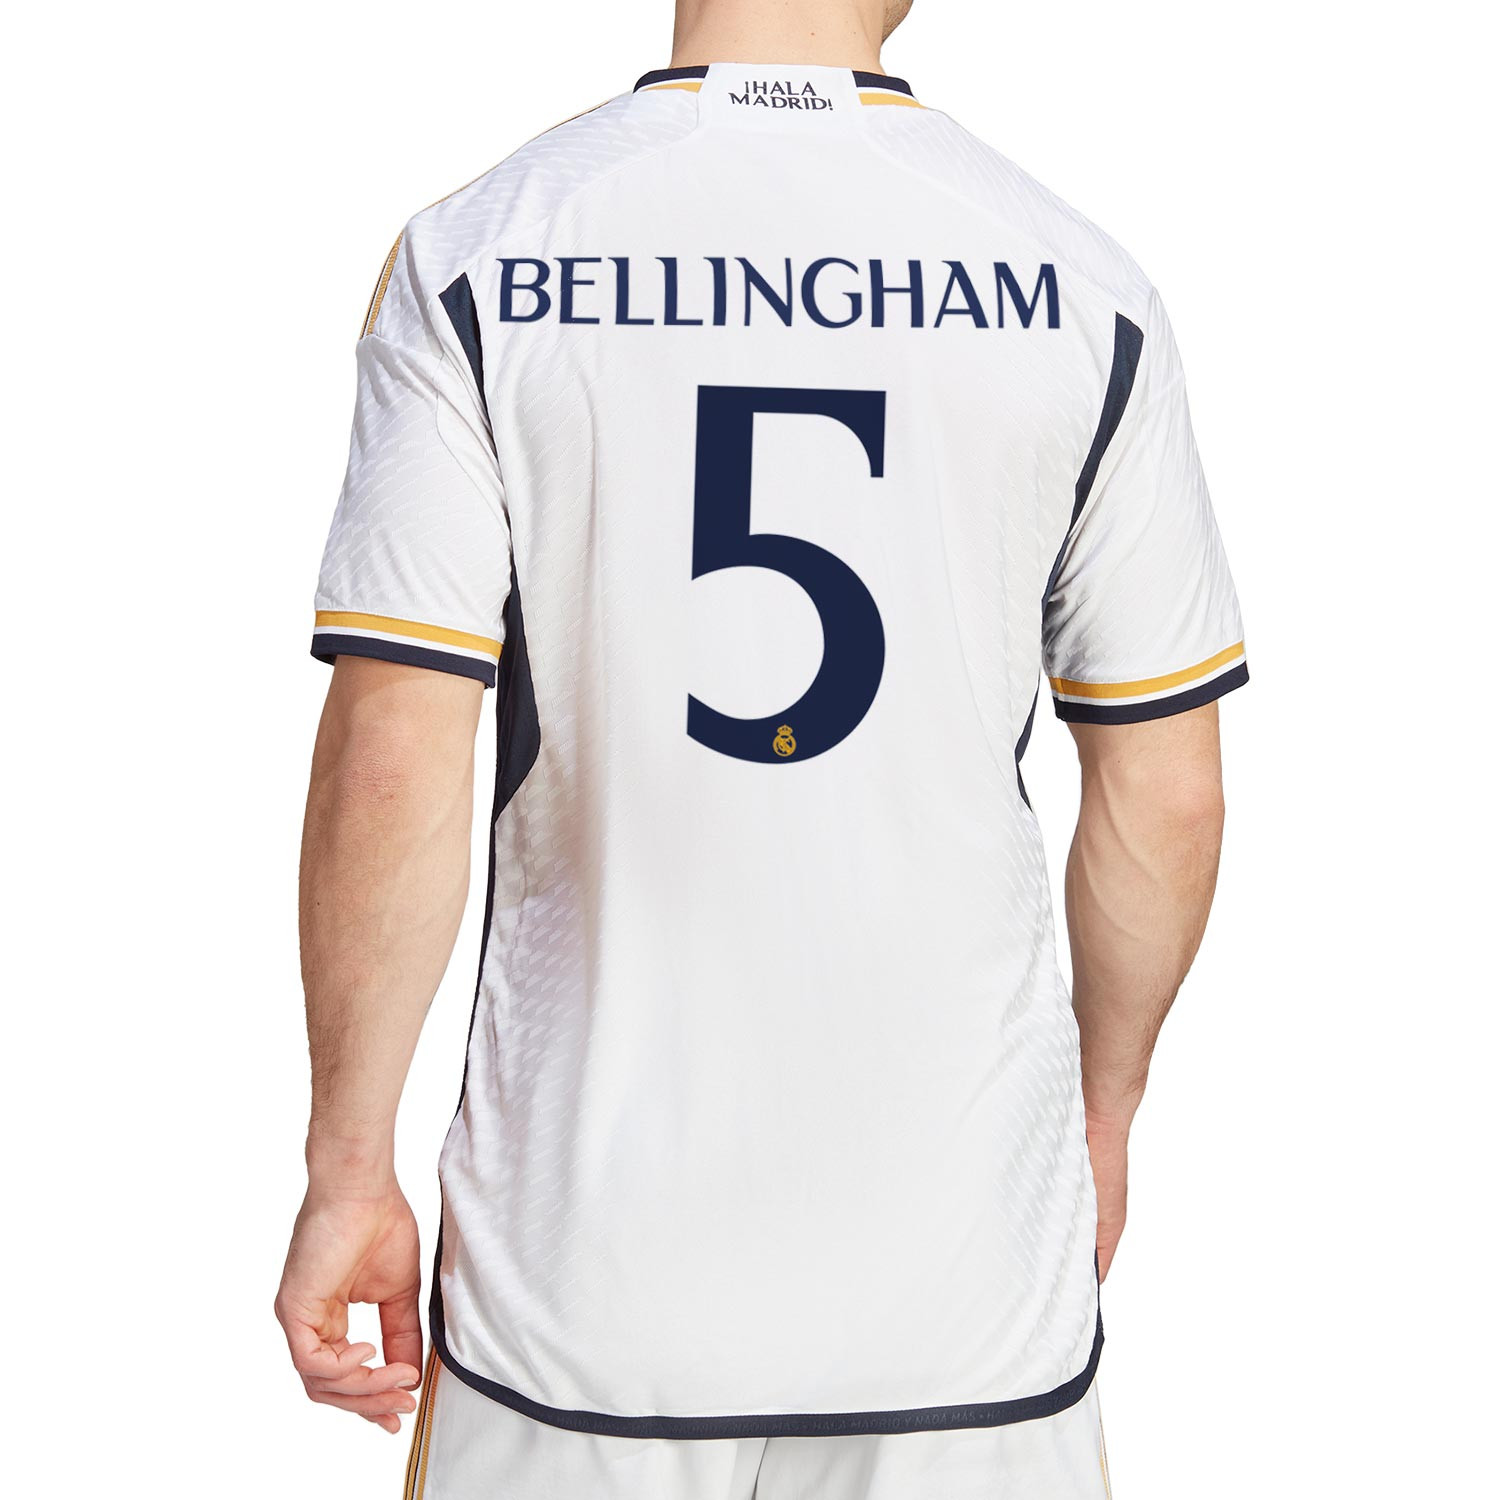 Camiseta adidas Real Madrid Bellingham 23-24 authentic